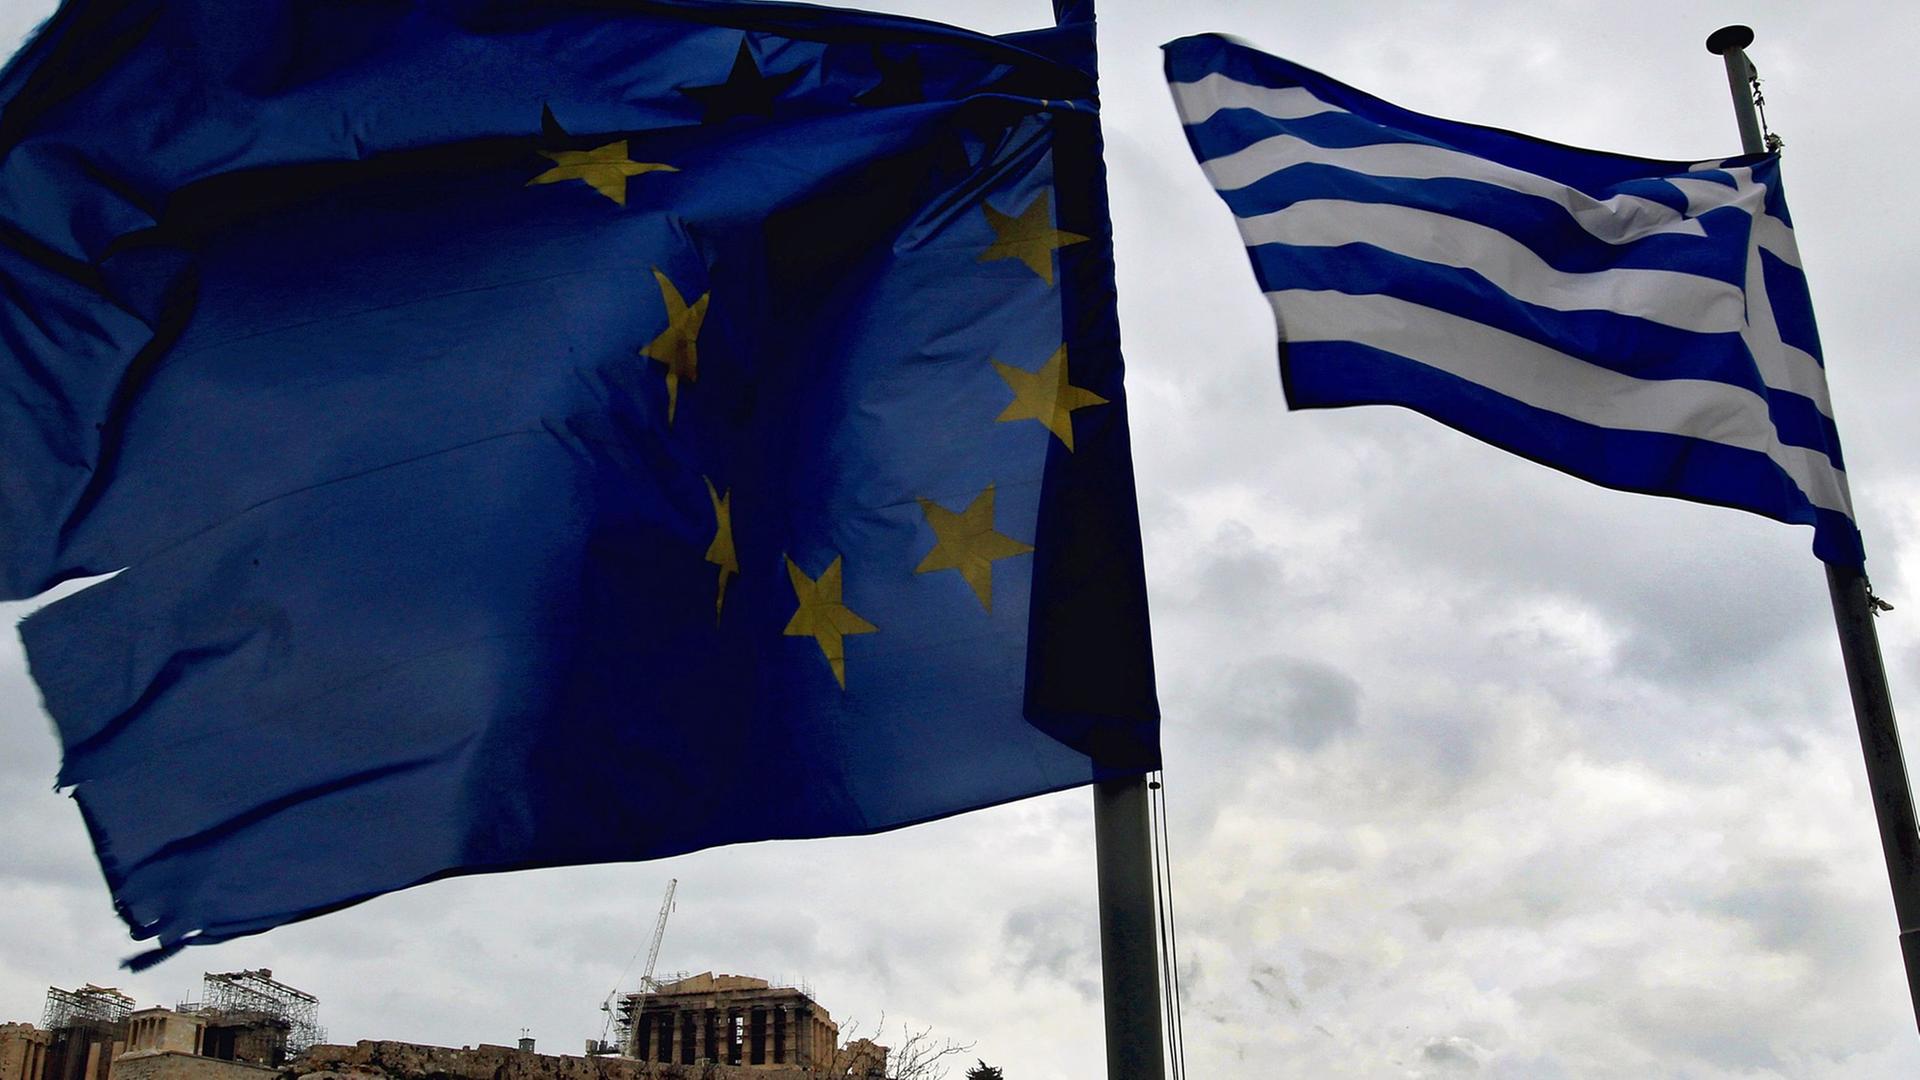 Die griechische und europäische Flagge wehen vor dem Parthenon-Tempel auf der Akropolis.